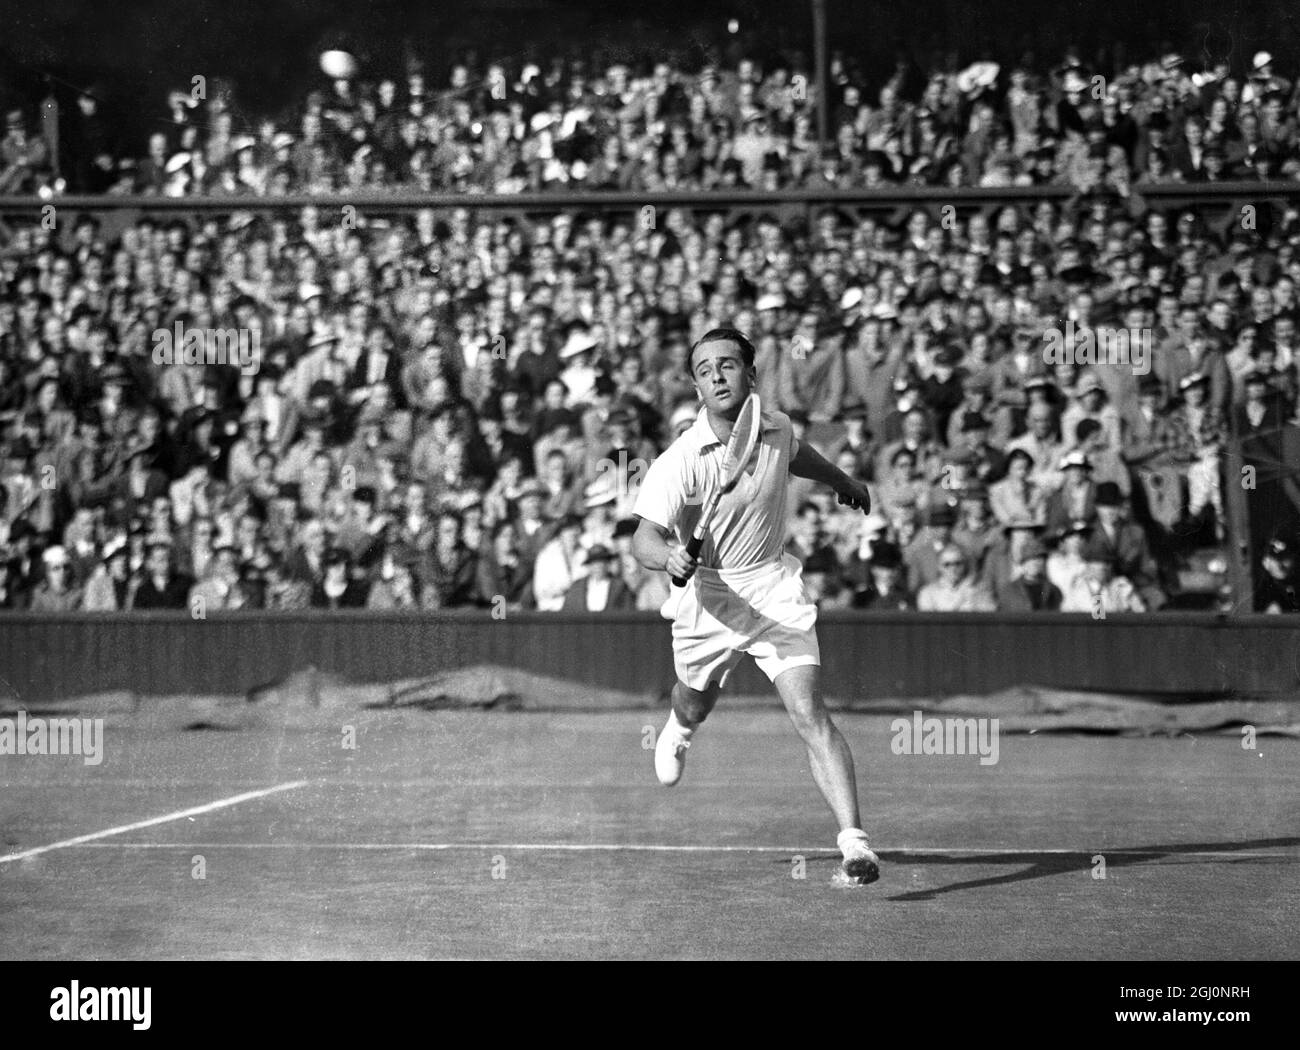 Fred Perry incontrò Adrian Quist in Australia nei singoli del Davis Cup Challenge legato tra Inghilterra e Australia a Wimbledon , Inghilterra . La pioggia ha fermato il gioco più volte . La foto mostra Quist scattando un colpo basso durante la partita . 25 luglio 1936 Foto Stock